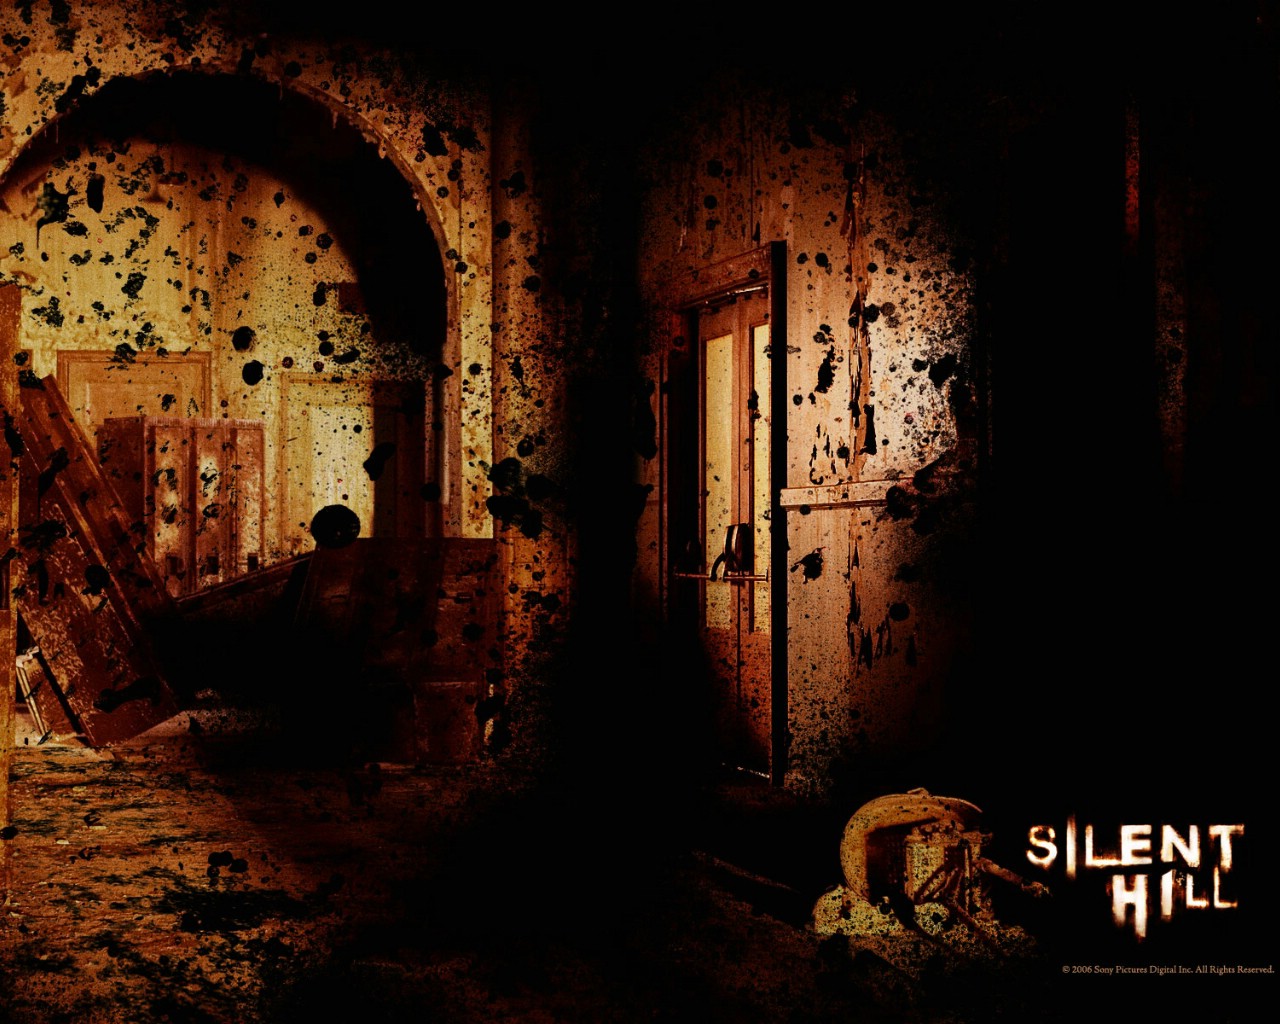 壁纸1280x1024 寂静岭 电影壁纸 Movie wallpaper Silent Hill 2006壁纸 恐怖电影《寂静岭 Silent Hill》壁纸 恐怖电影《寂静岭 Silent Hill》图片 恐怖电影《寂静岭 Silent Hill》素材 影视壁纸 影视图库 影视图片素材桌面壁纸